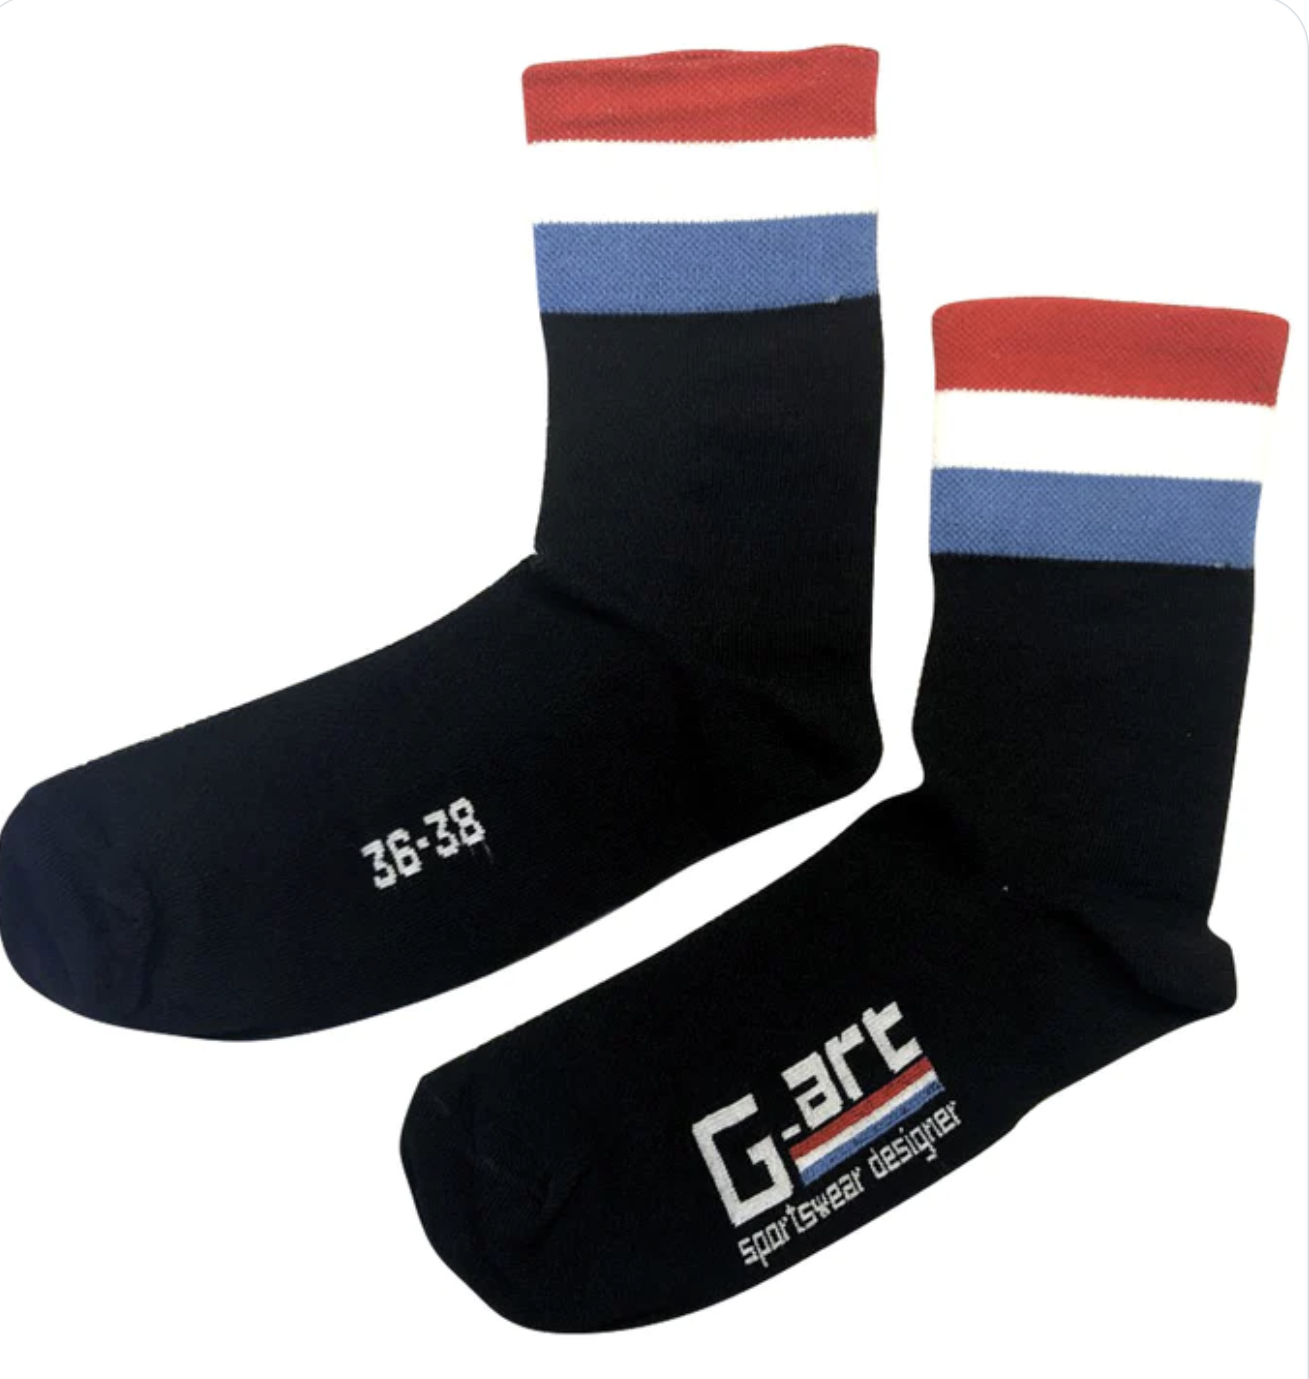 G-ART BLACK - Socks